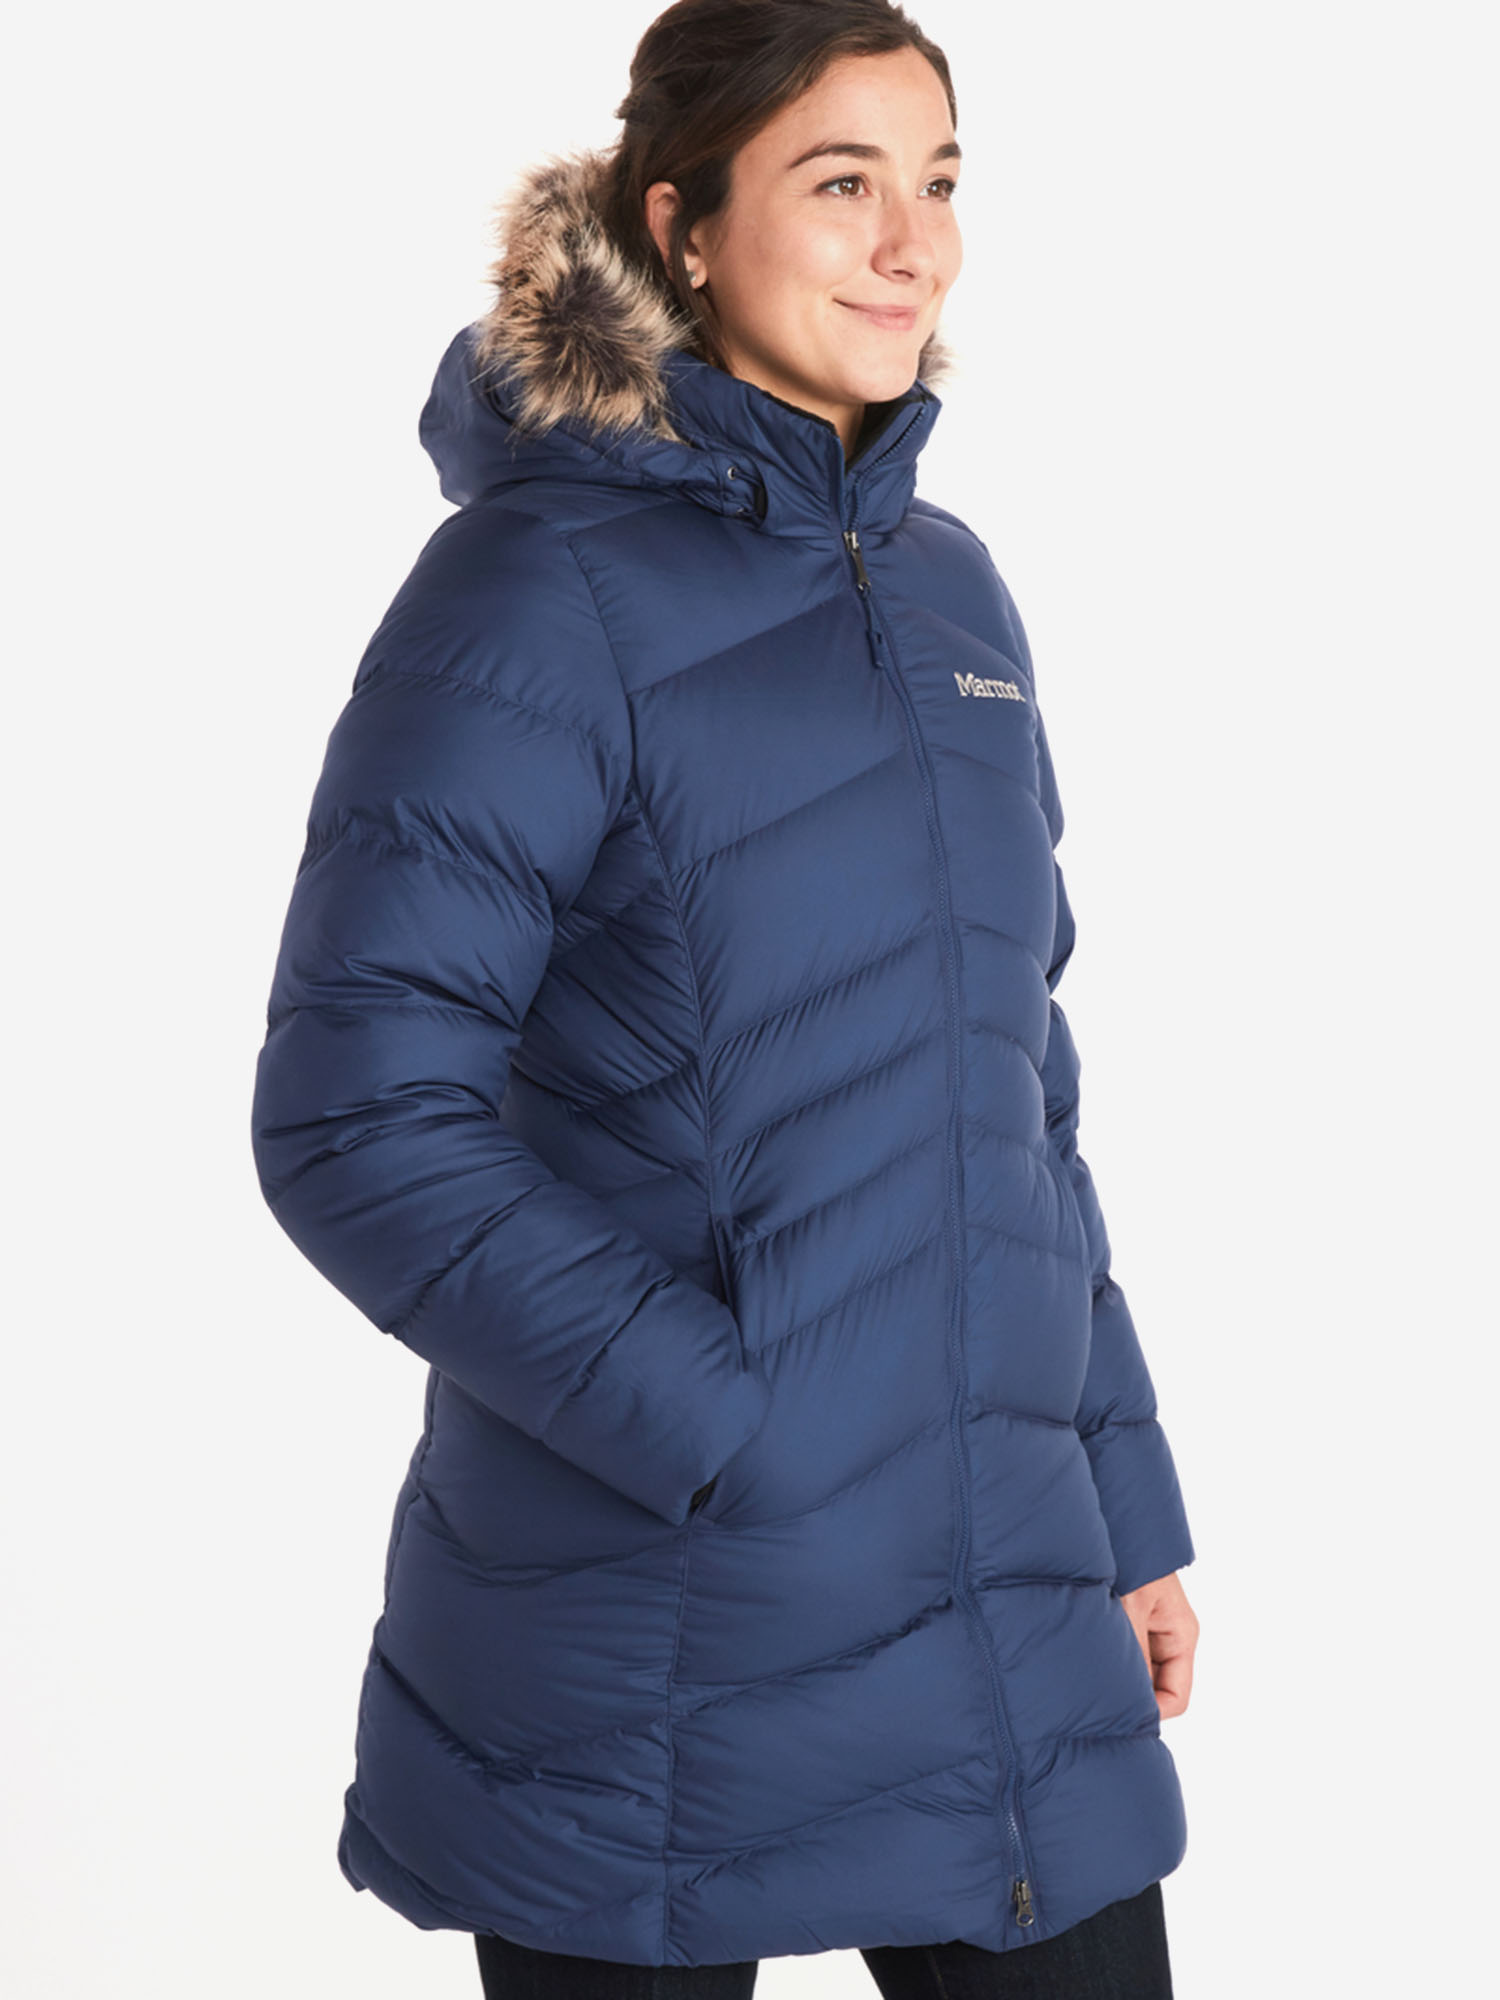 Пальто женское Marmot Montreal Coat, Синий пальто женское marmot montreal coat синий